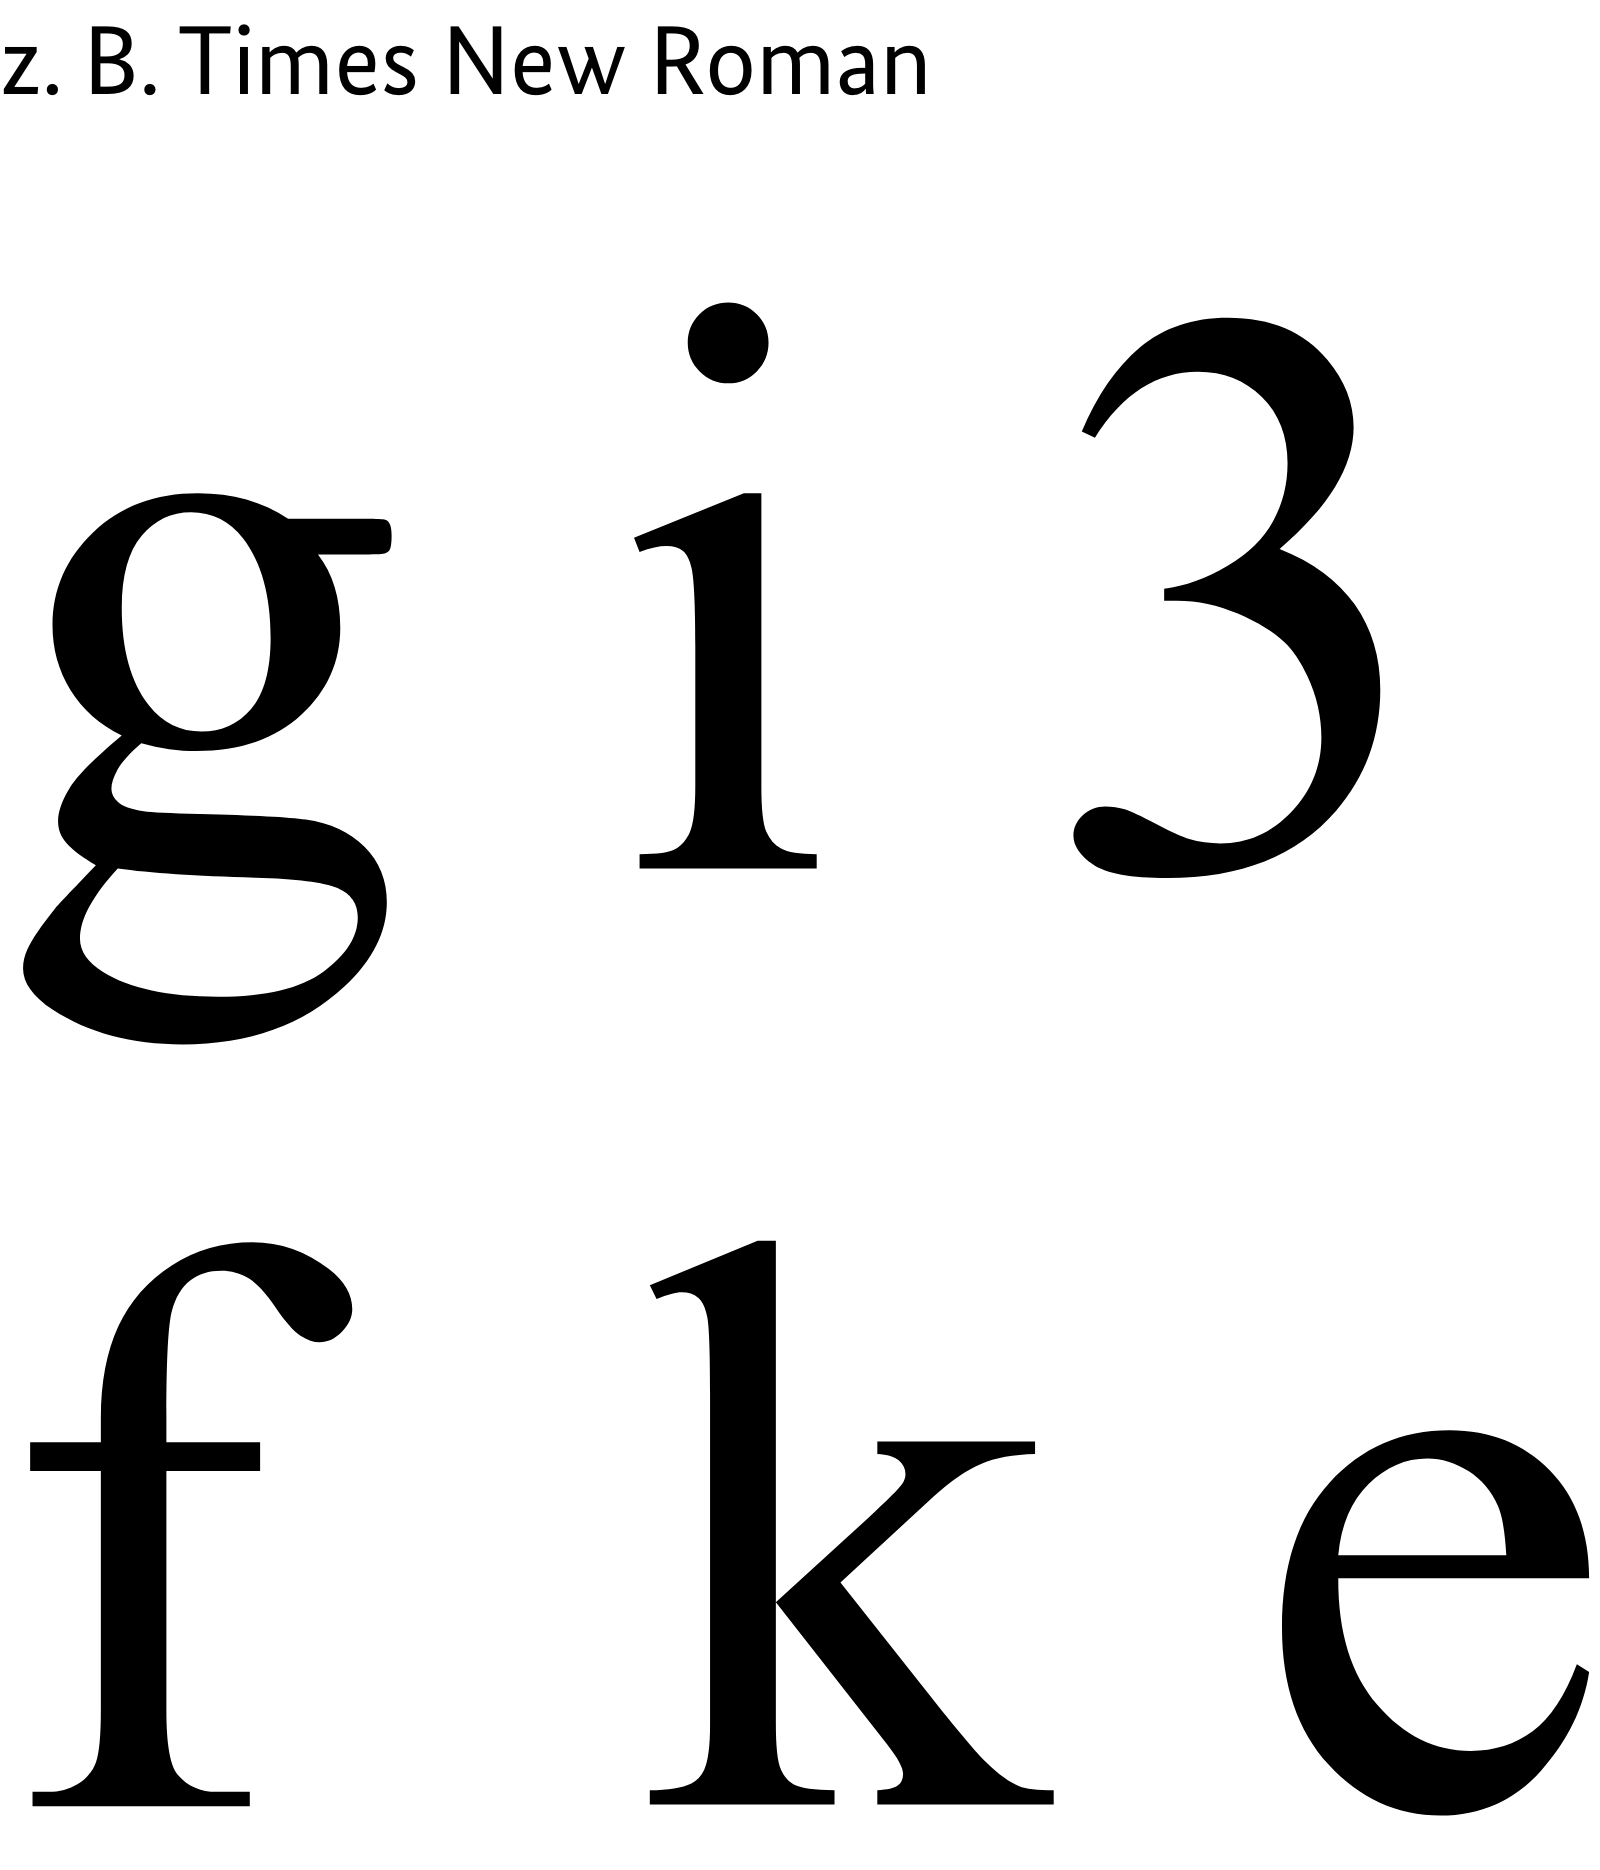 Beispielhafte Buchstaben der Schrift Times New Roman: g, i, 3, f,k, e